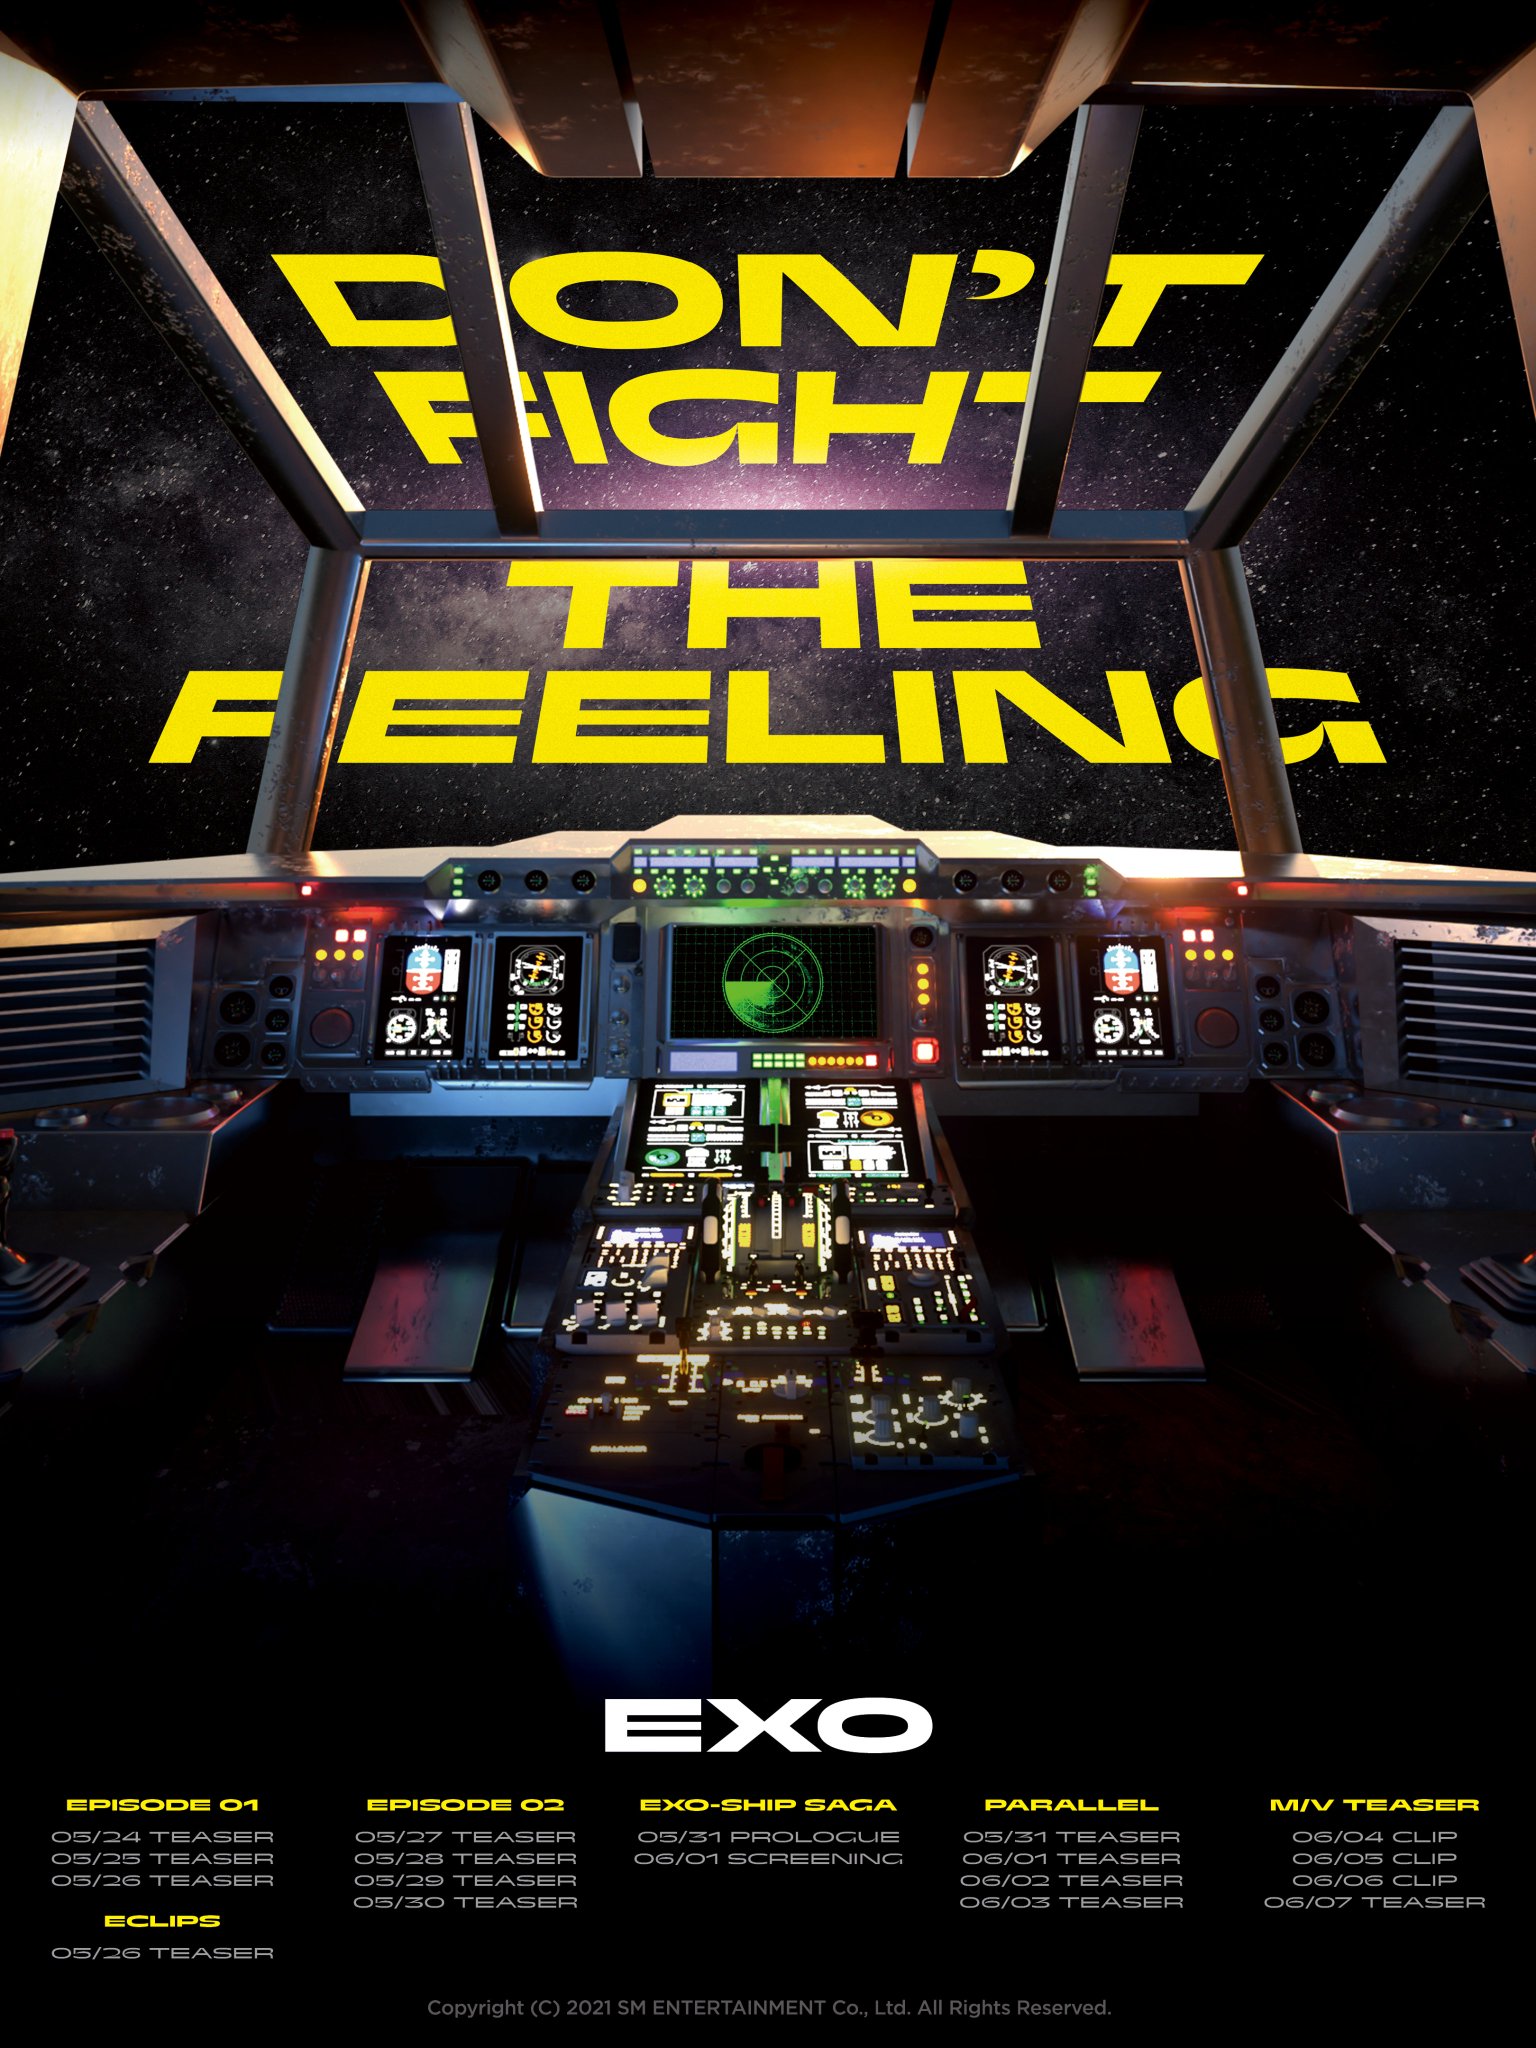 عودة EXO بأغنية Don't Fight the Feeling- الصورة من موقع soompi